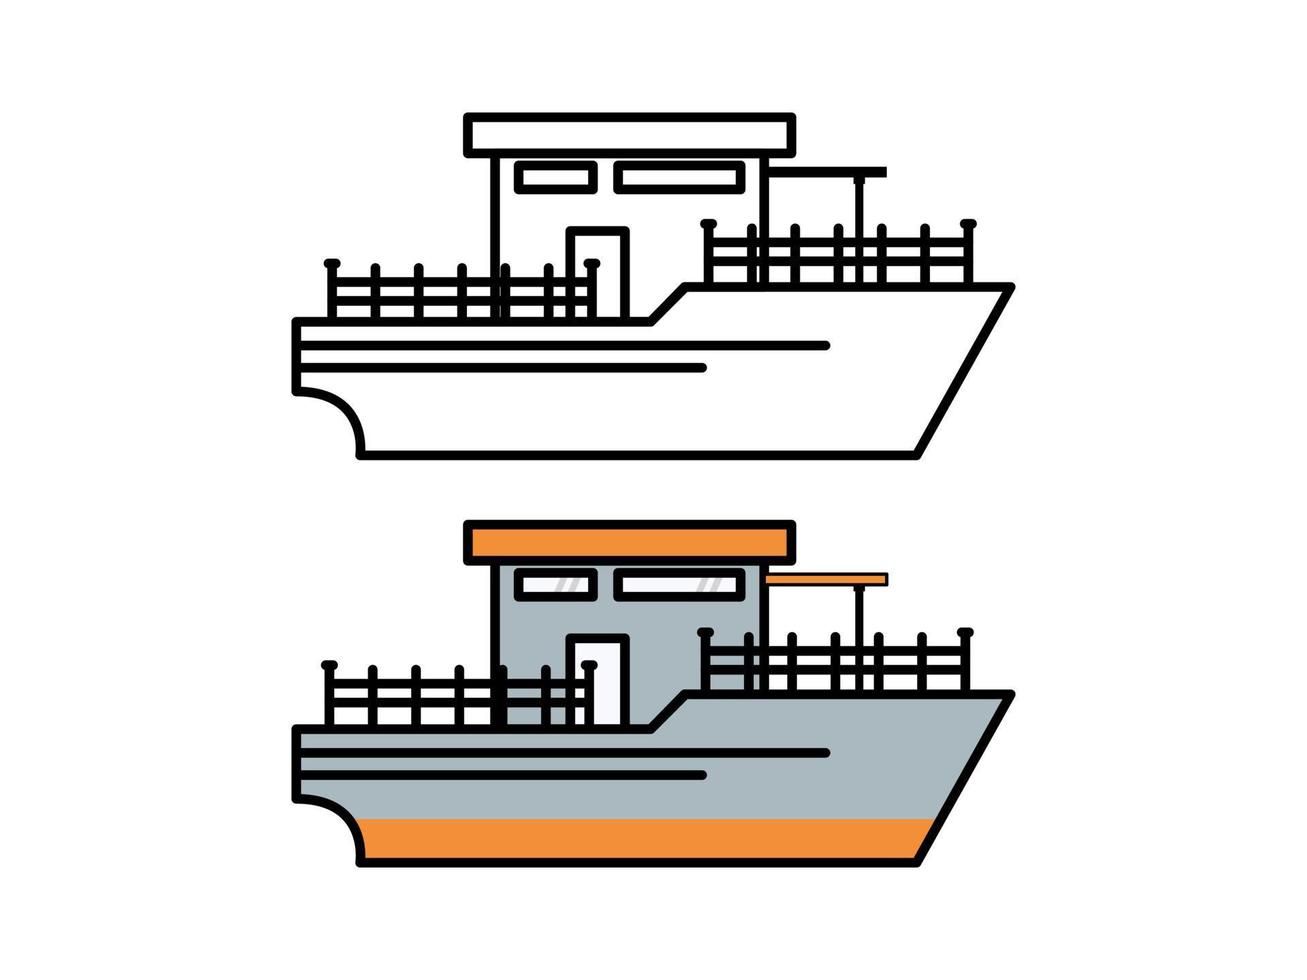 diseño gráfico vectorial en forma de ferry de dibujos animados, adecuado para ilustraciones de diseño complementarias y otros vector